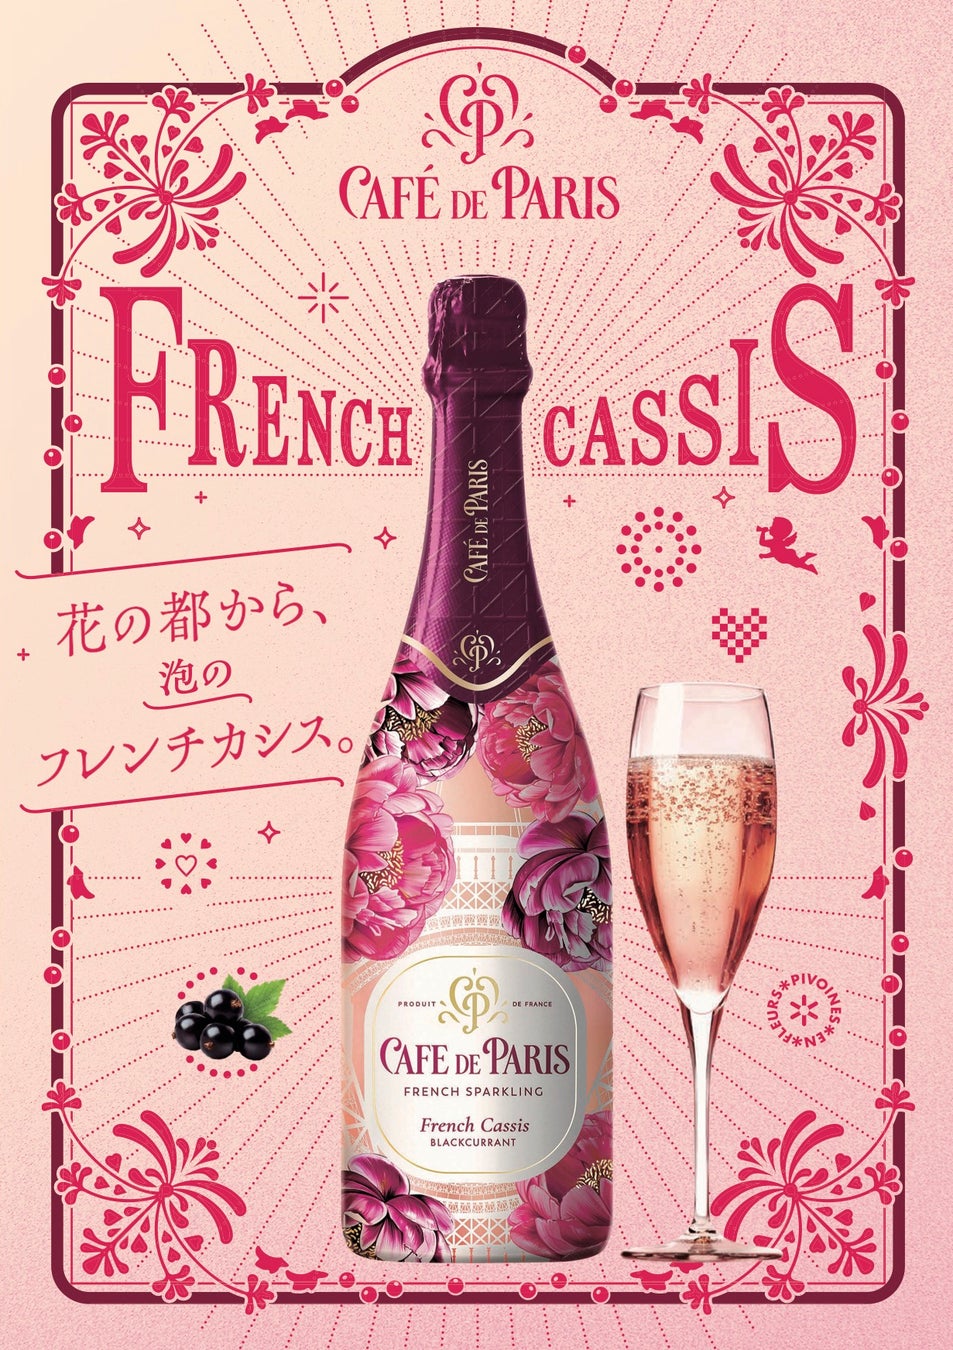 フランス産スパークリングワイン「カフェ・ド・パリ」からパリらしい華やかさや活気を表現した「カフェ・ド・パリ フレンチ・カシス」が登場2024年7月1日(月)より発売